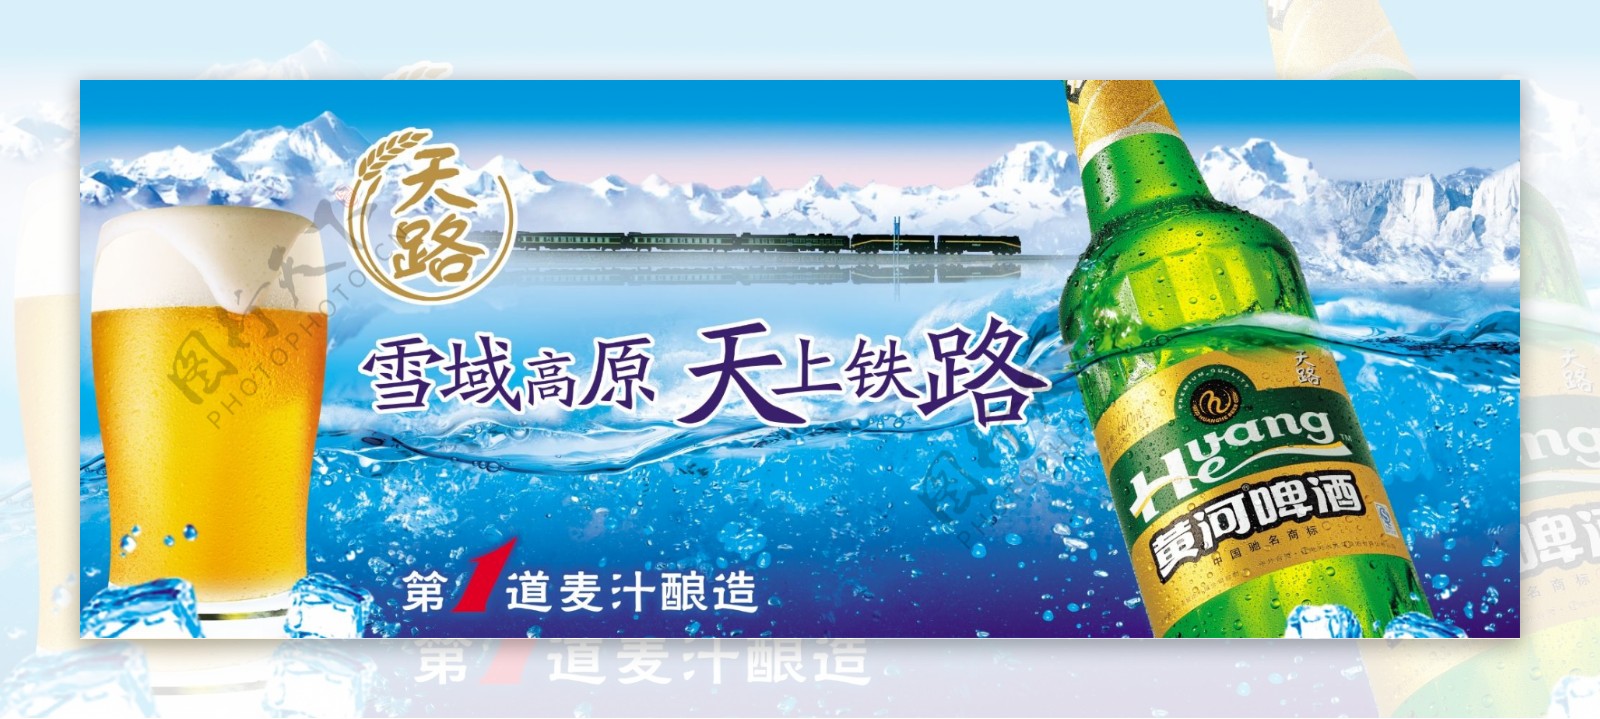 黄河啤酒广告图片